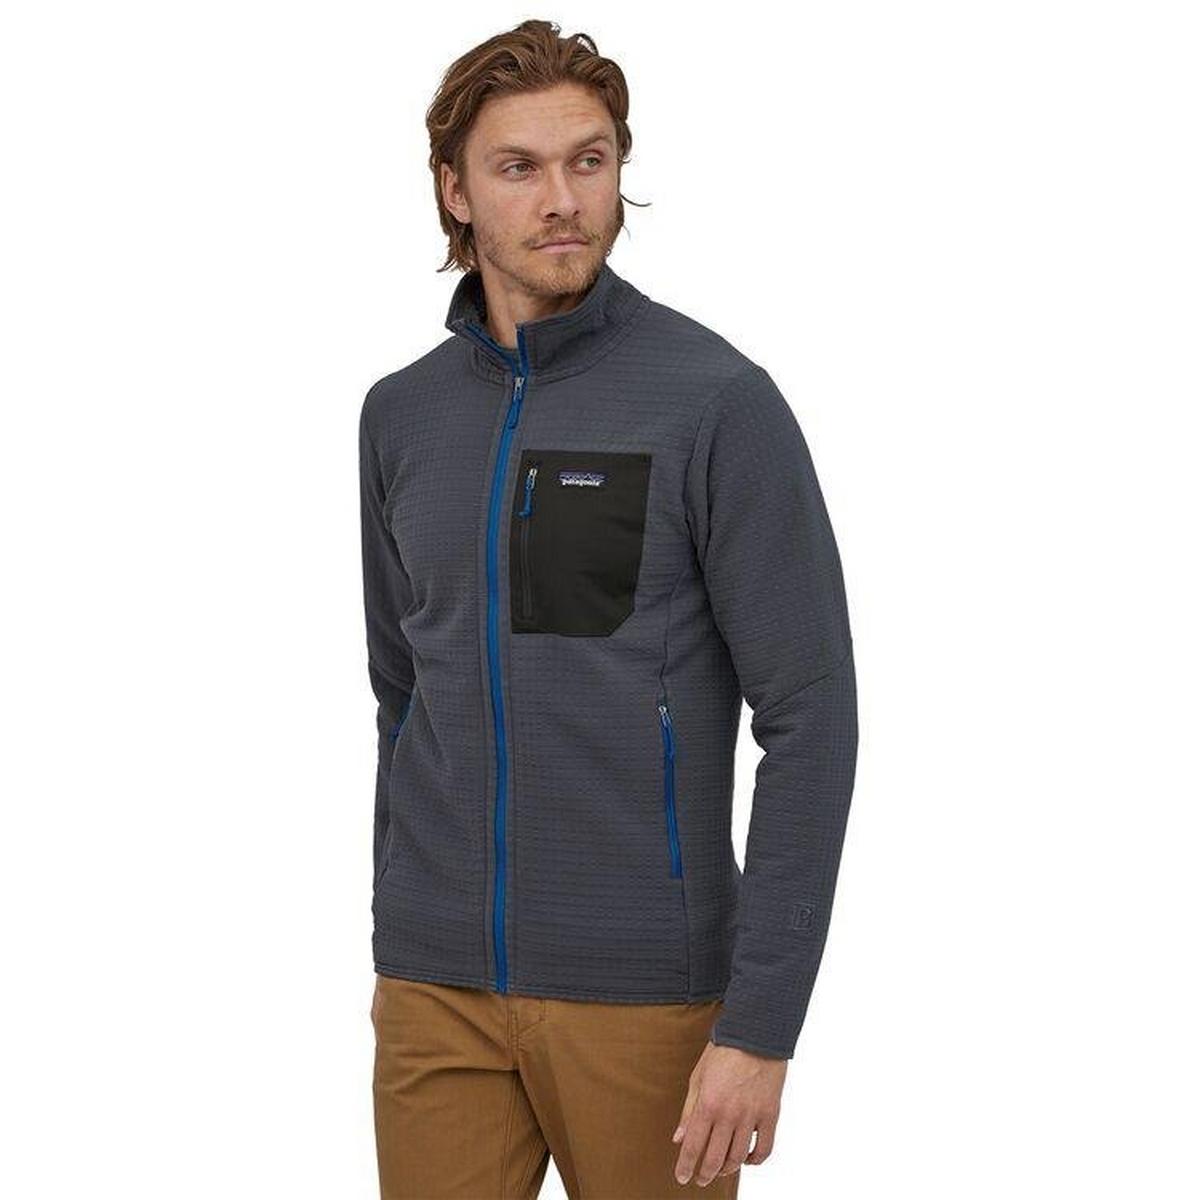 Patagonia Men's R2 Techface Jacket - Grey